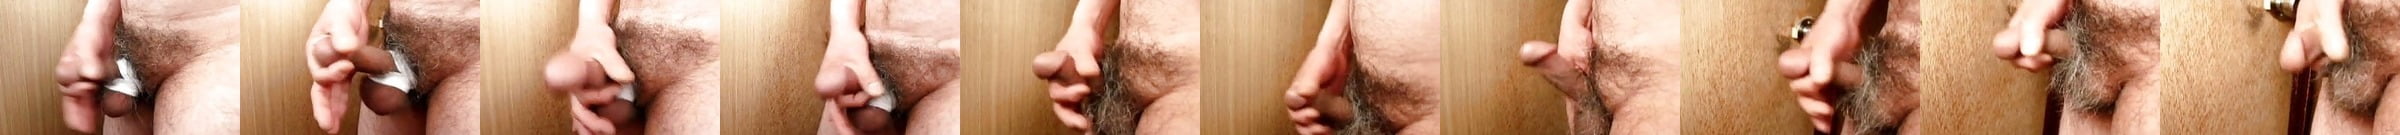 Japanese Mature Man Erect Penis Slide Show Gay Porn 15 Jp